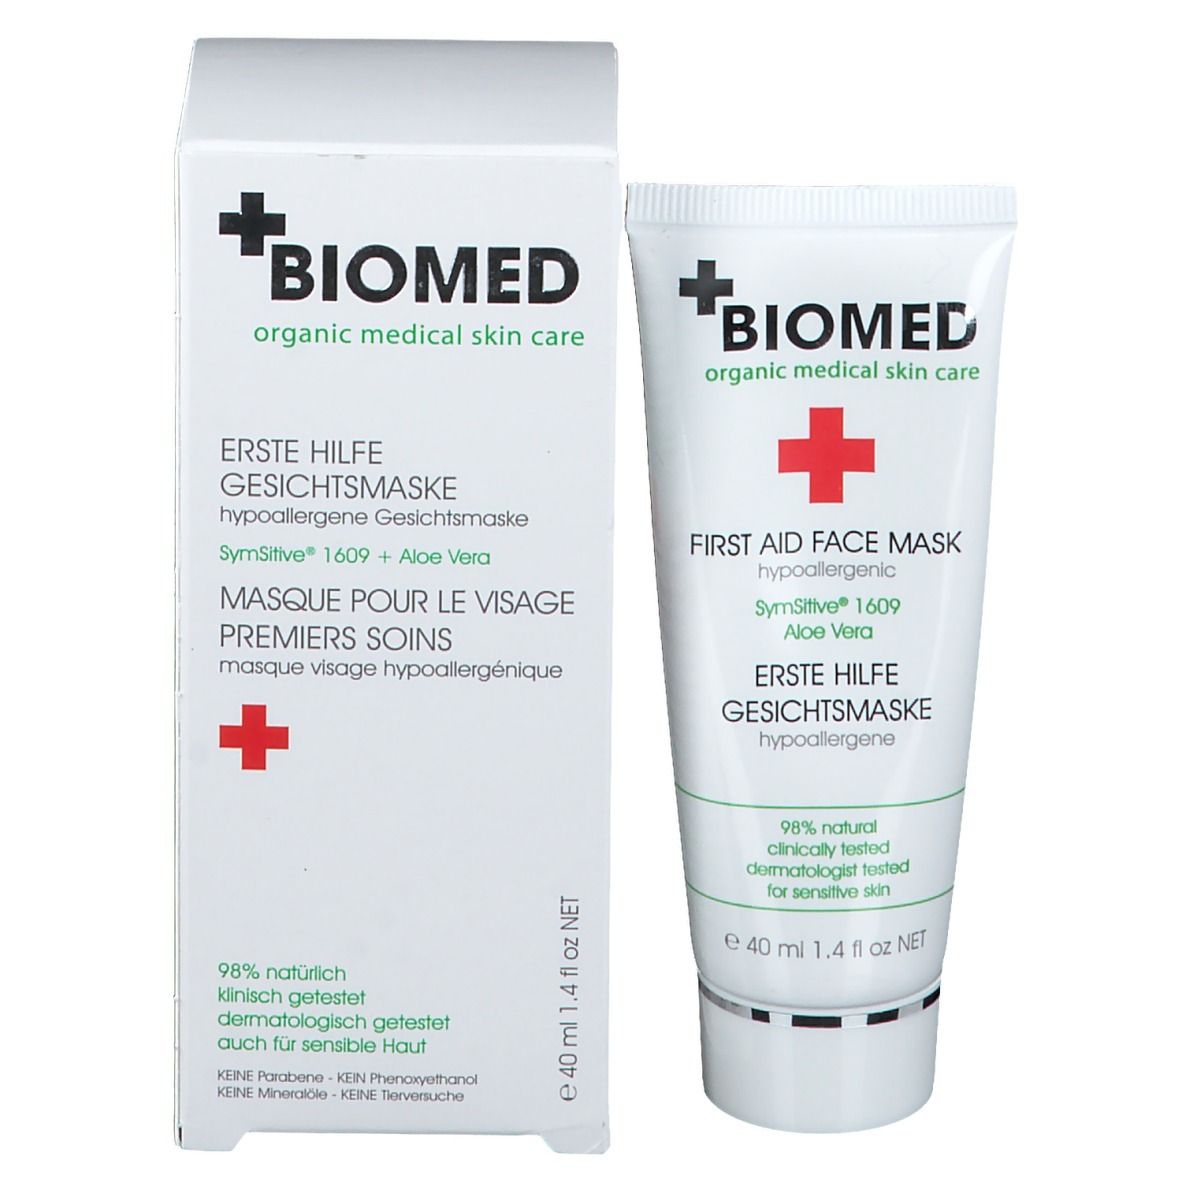 BIOMD Erste Hilfe hypoallergene Gesichtsmaske